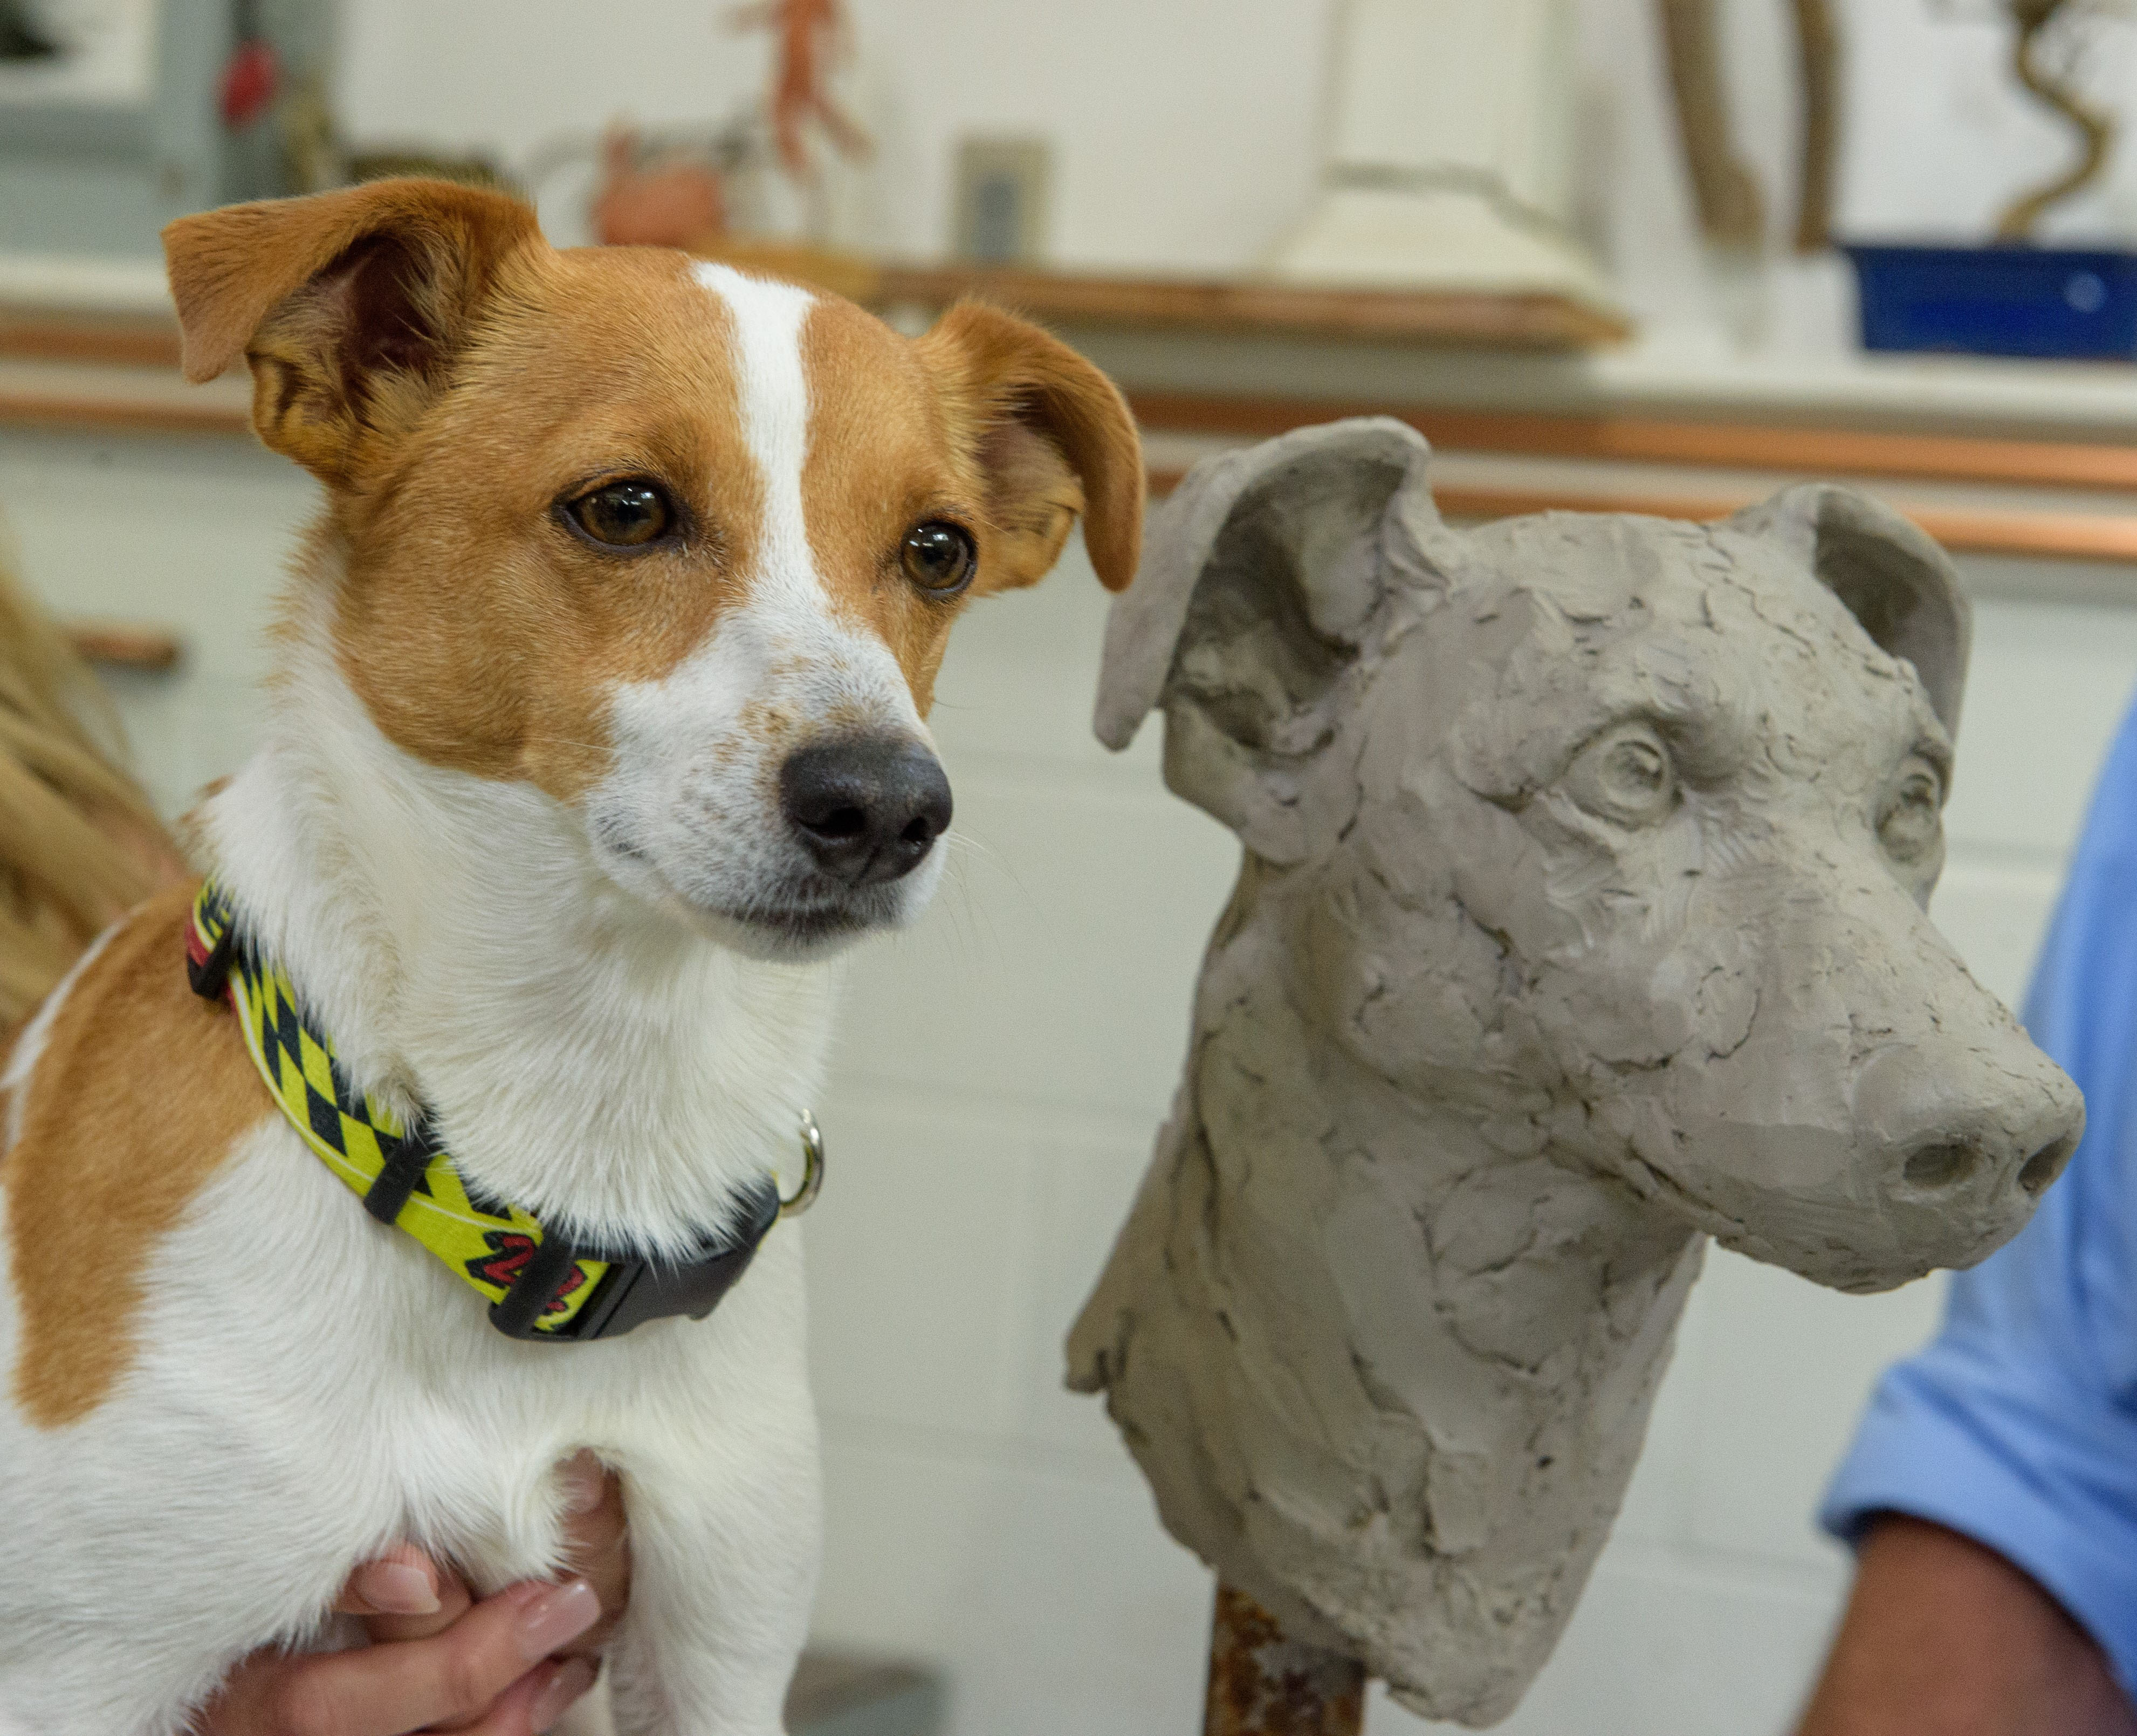 a dog next to a sculpture of a dog